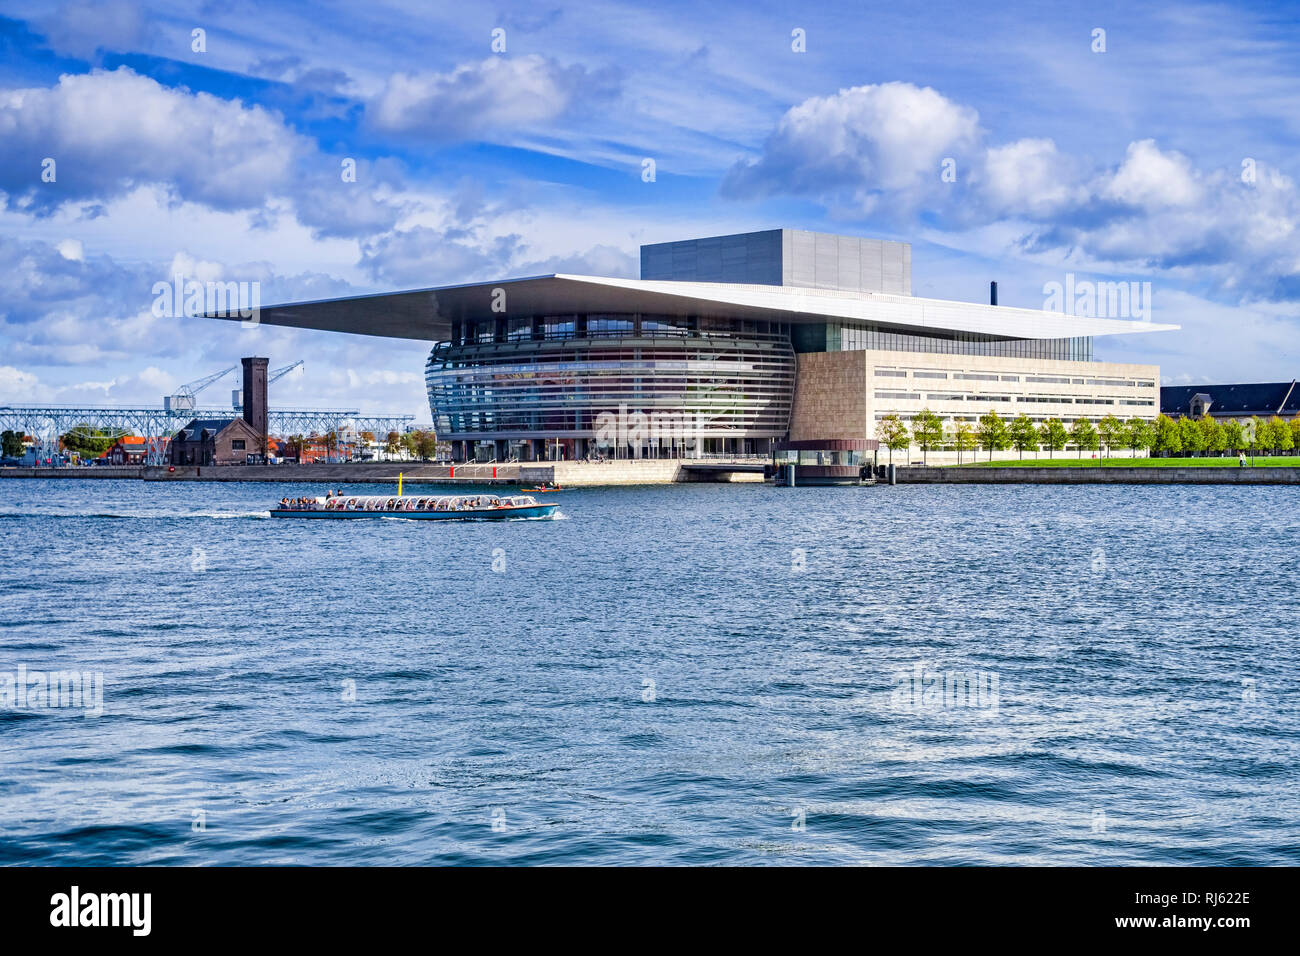 23 Settembre 2018: Copenhagen, Danimarca - Copenhagen Opera House o Operaen, su Holmen Island, con una imbarcazione turistica passando sul porto. Foto Stock